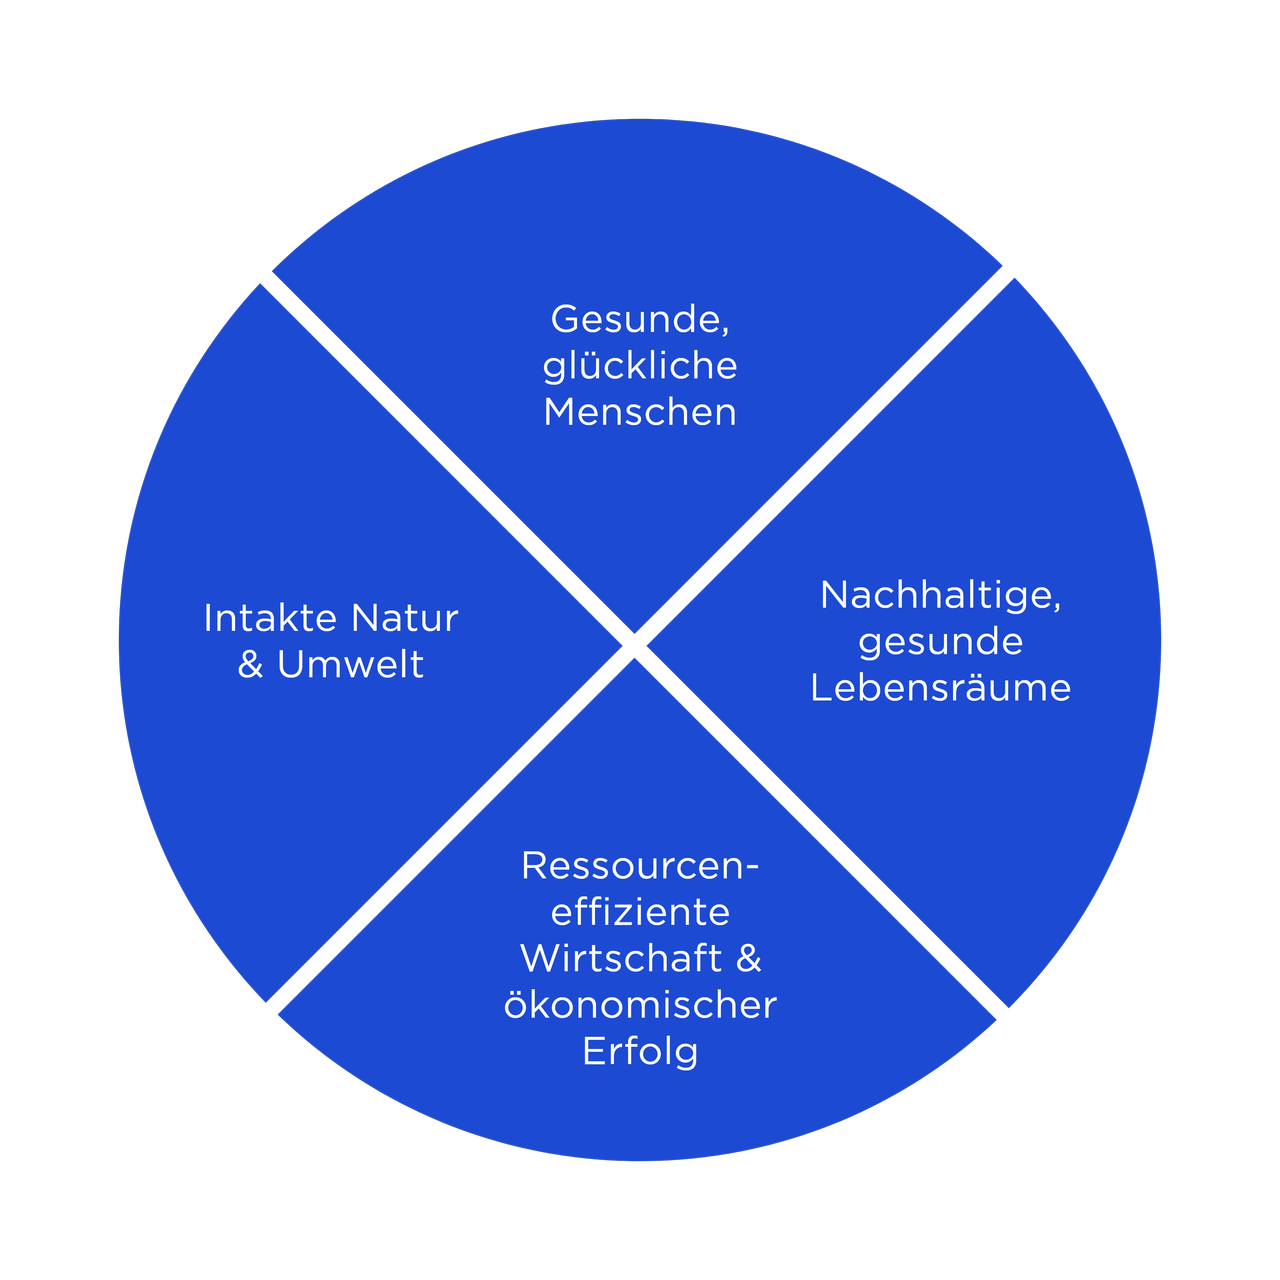 Ein Kreis, in vier gleiche Teile geteilt. Diese zeigen die vier Handlungsfelder nachhaltig agierender Unternehmen an: Intakte Natur, Gesunde Menschen, Nachhaltige Lebensräume, Ökonomischer Erfolg.